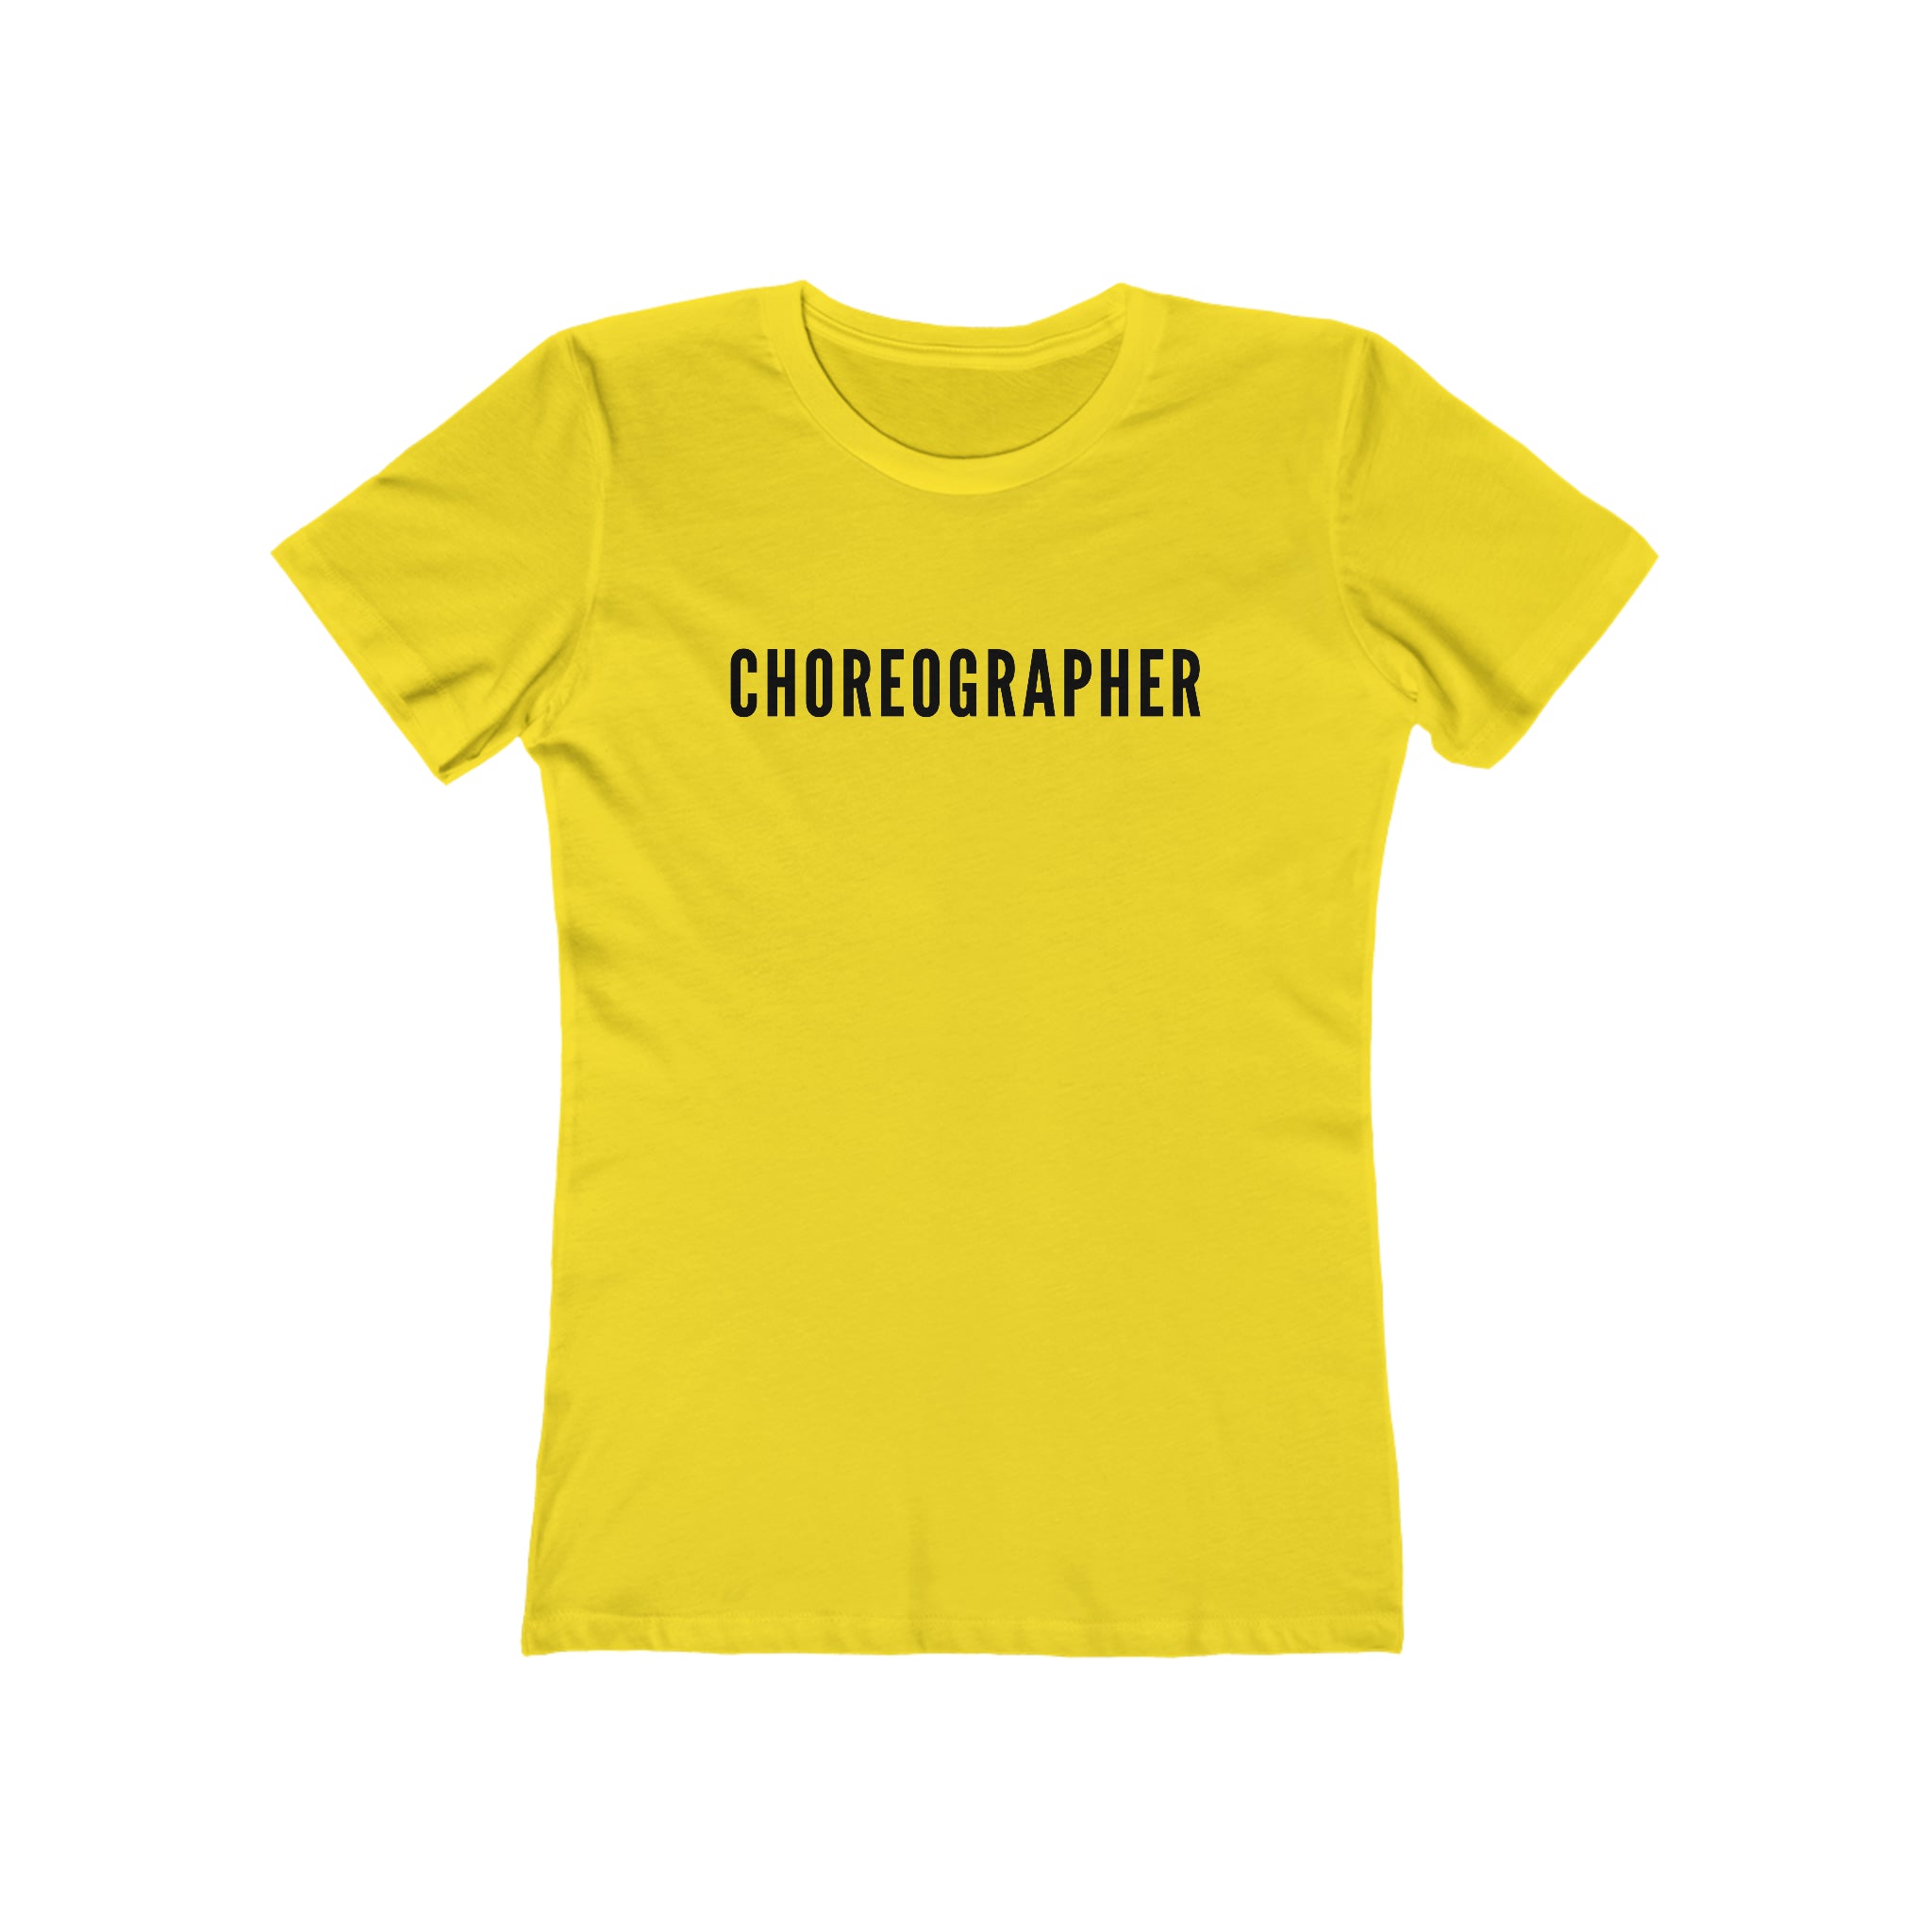 "Choreographer" t-shirt - Slim fit